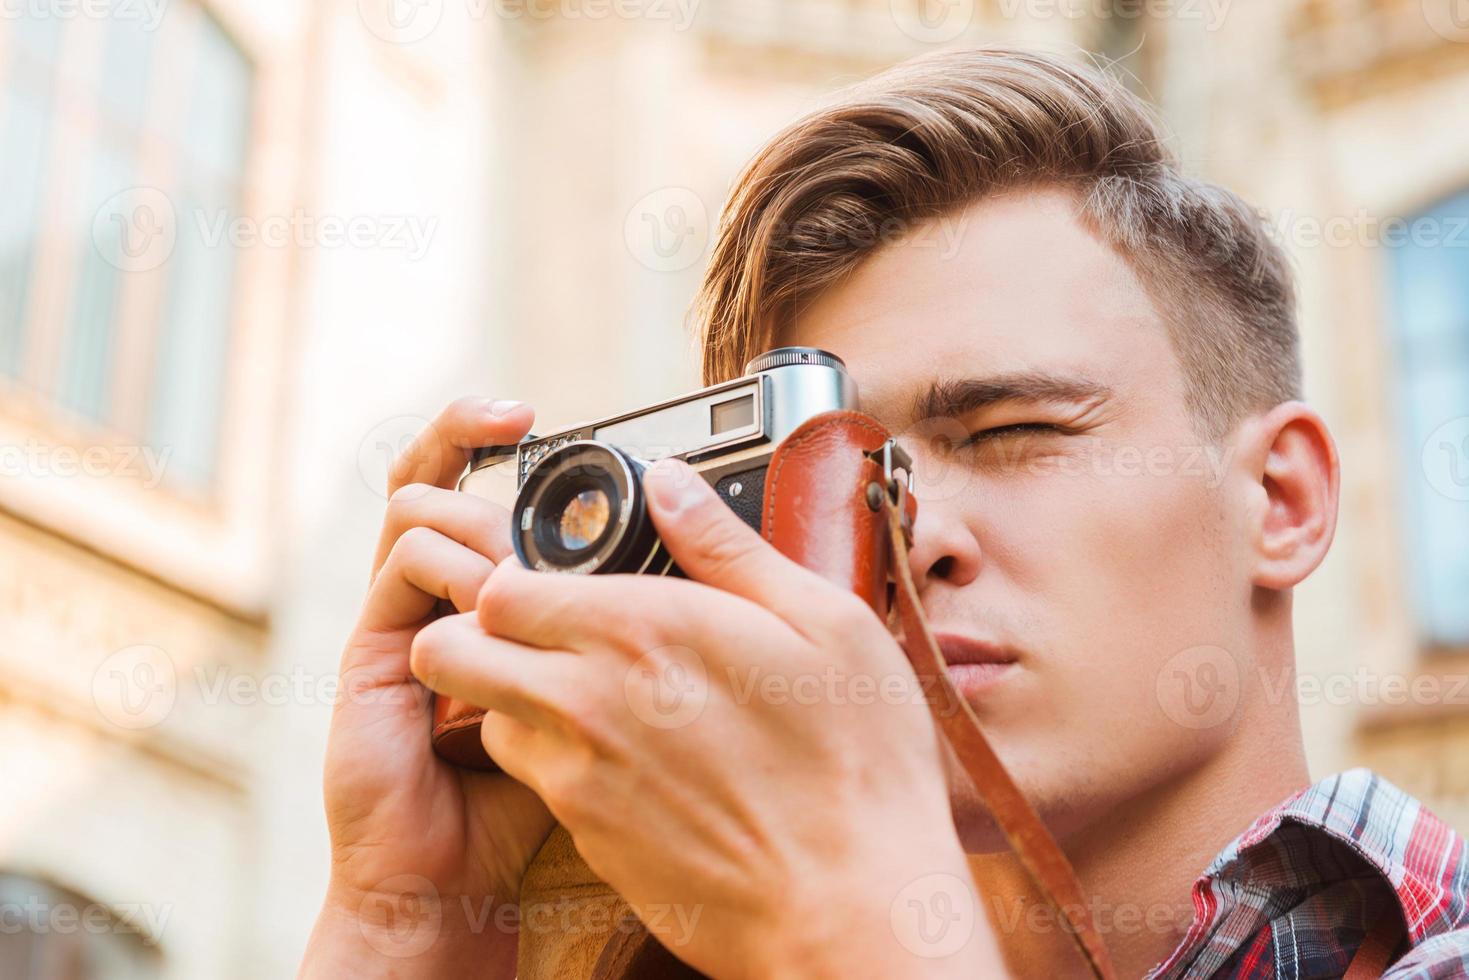 Moment einfangen. Tiefwinkelansicht eines hübschen jungen Mannes, der mit seiner Vintage-Kamera fotografiert, während er im Freien steht foto